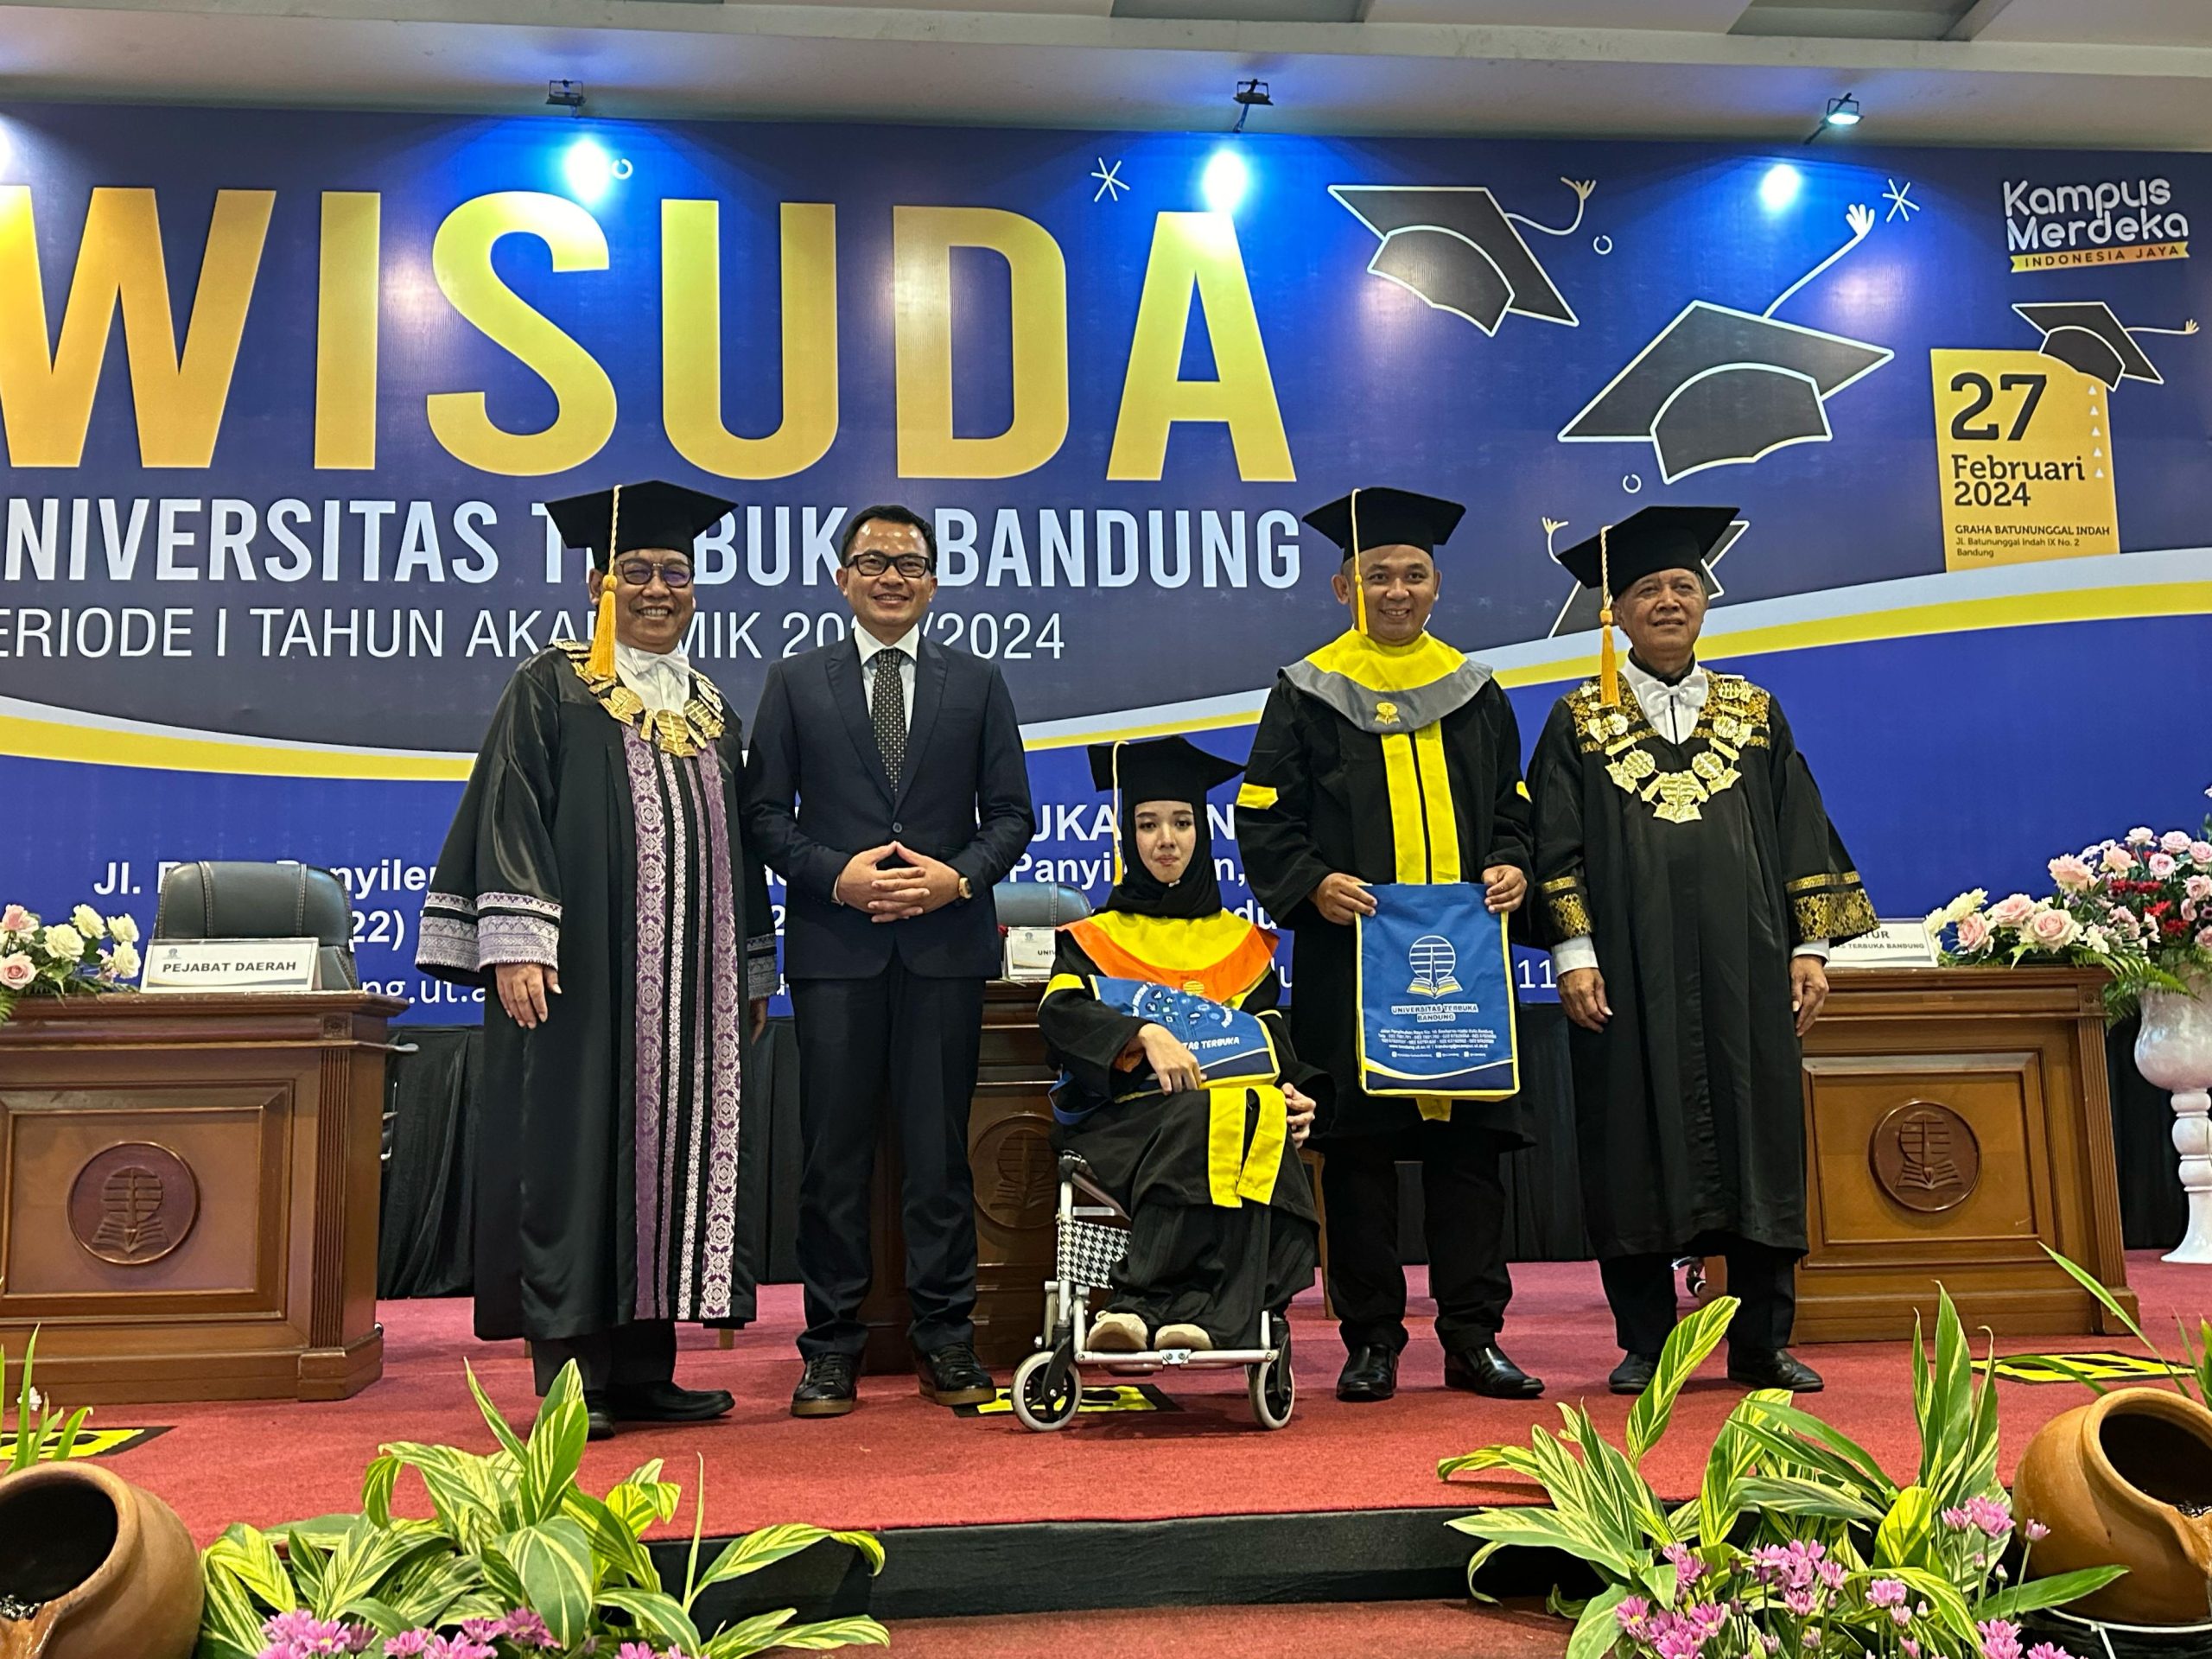 Universitas Terbuka Bandung Selenggarakan Wisuda Daerah Periode 1 Tahun Ajaran 2023/2024